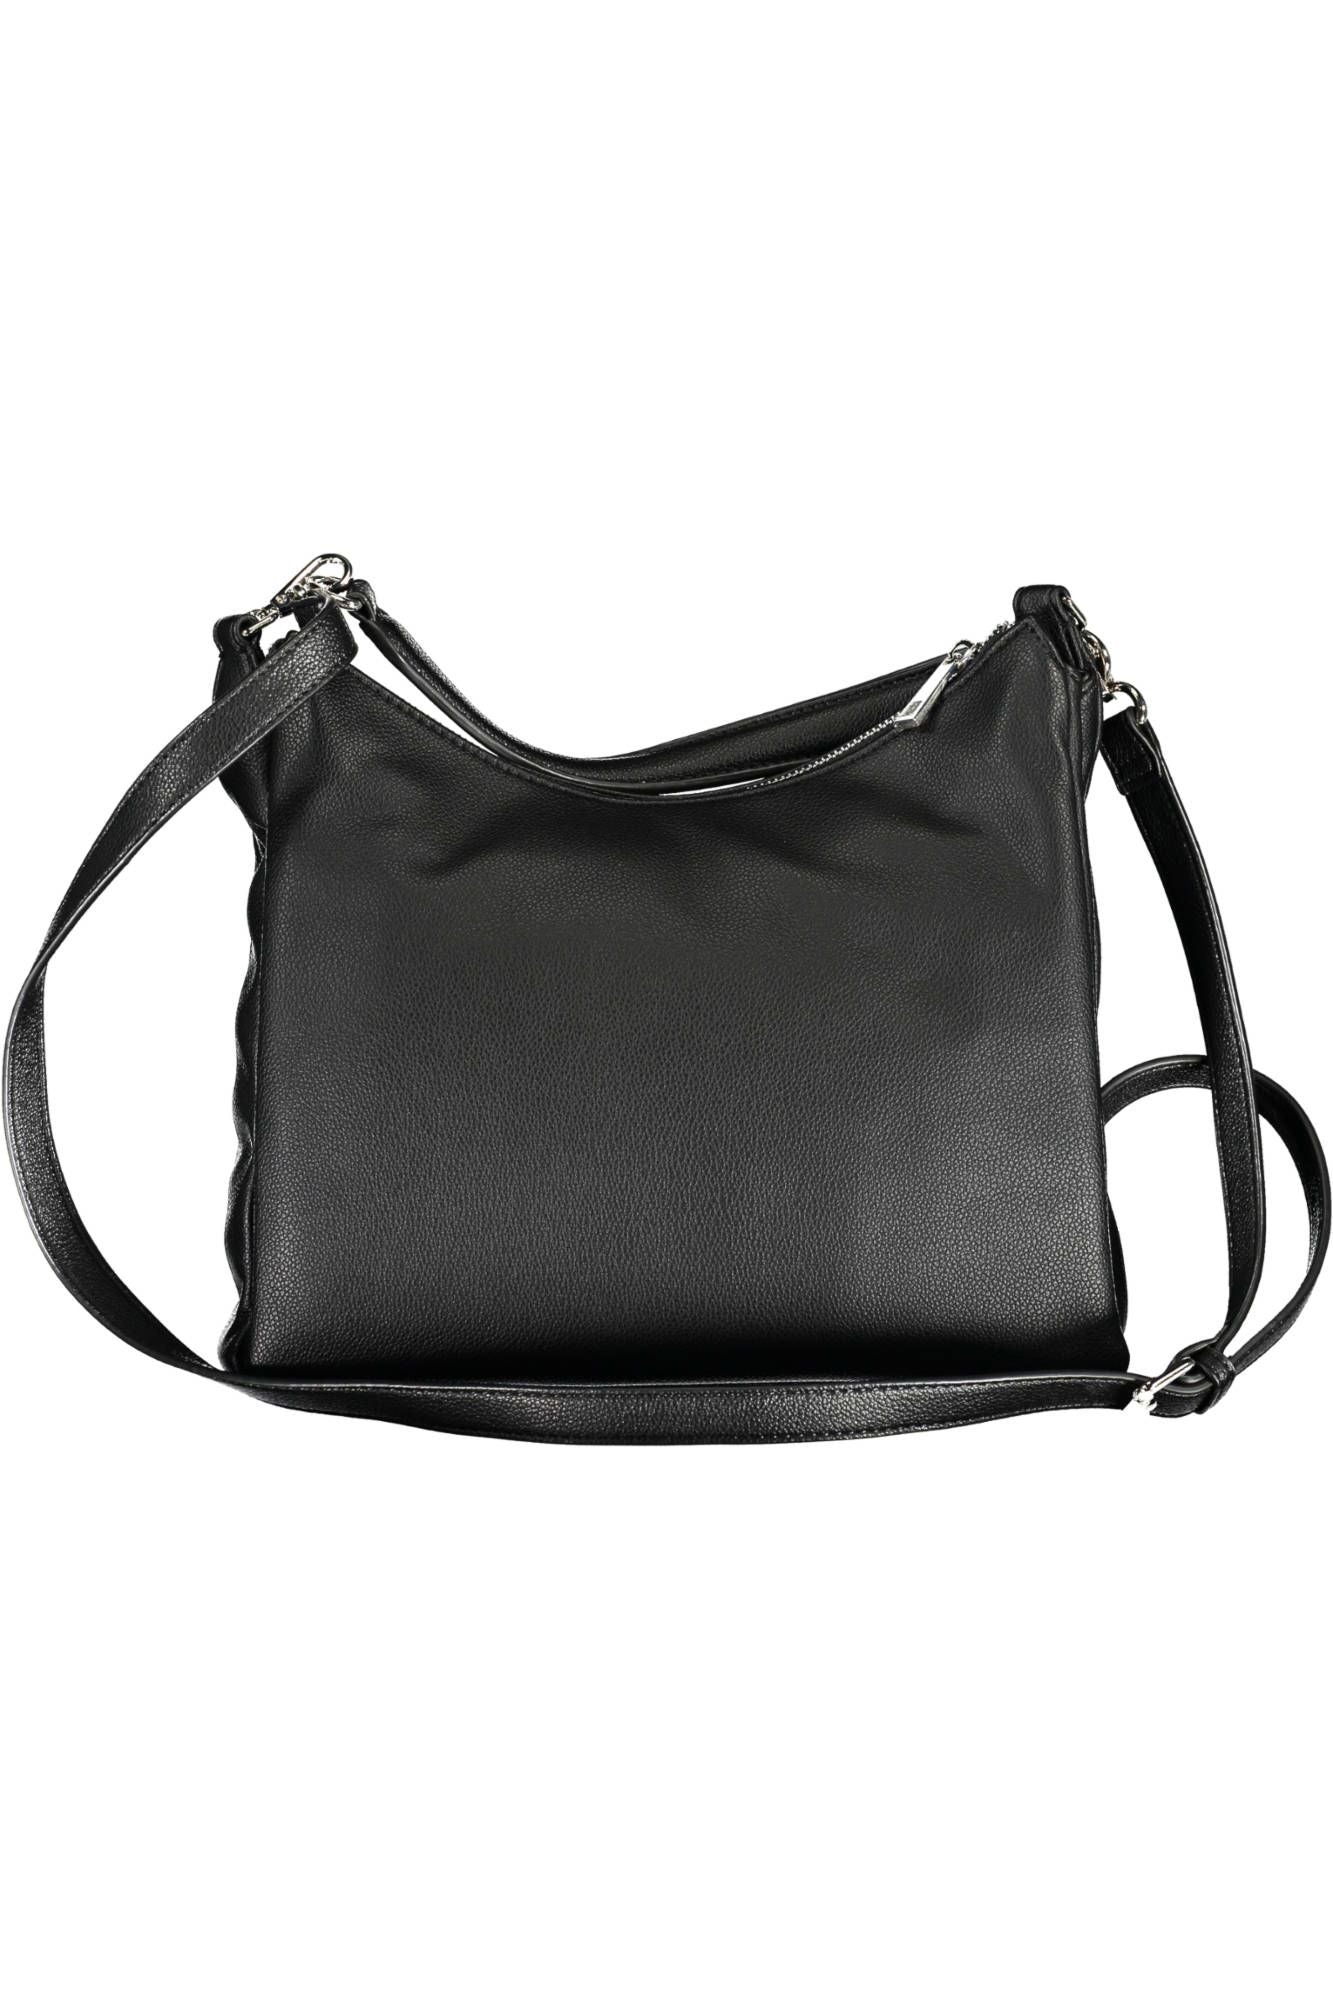 Elegant Multi-Compartment Designer Handbag